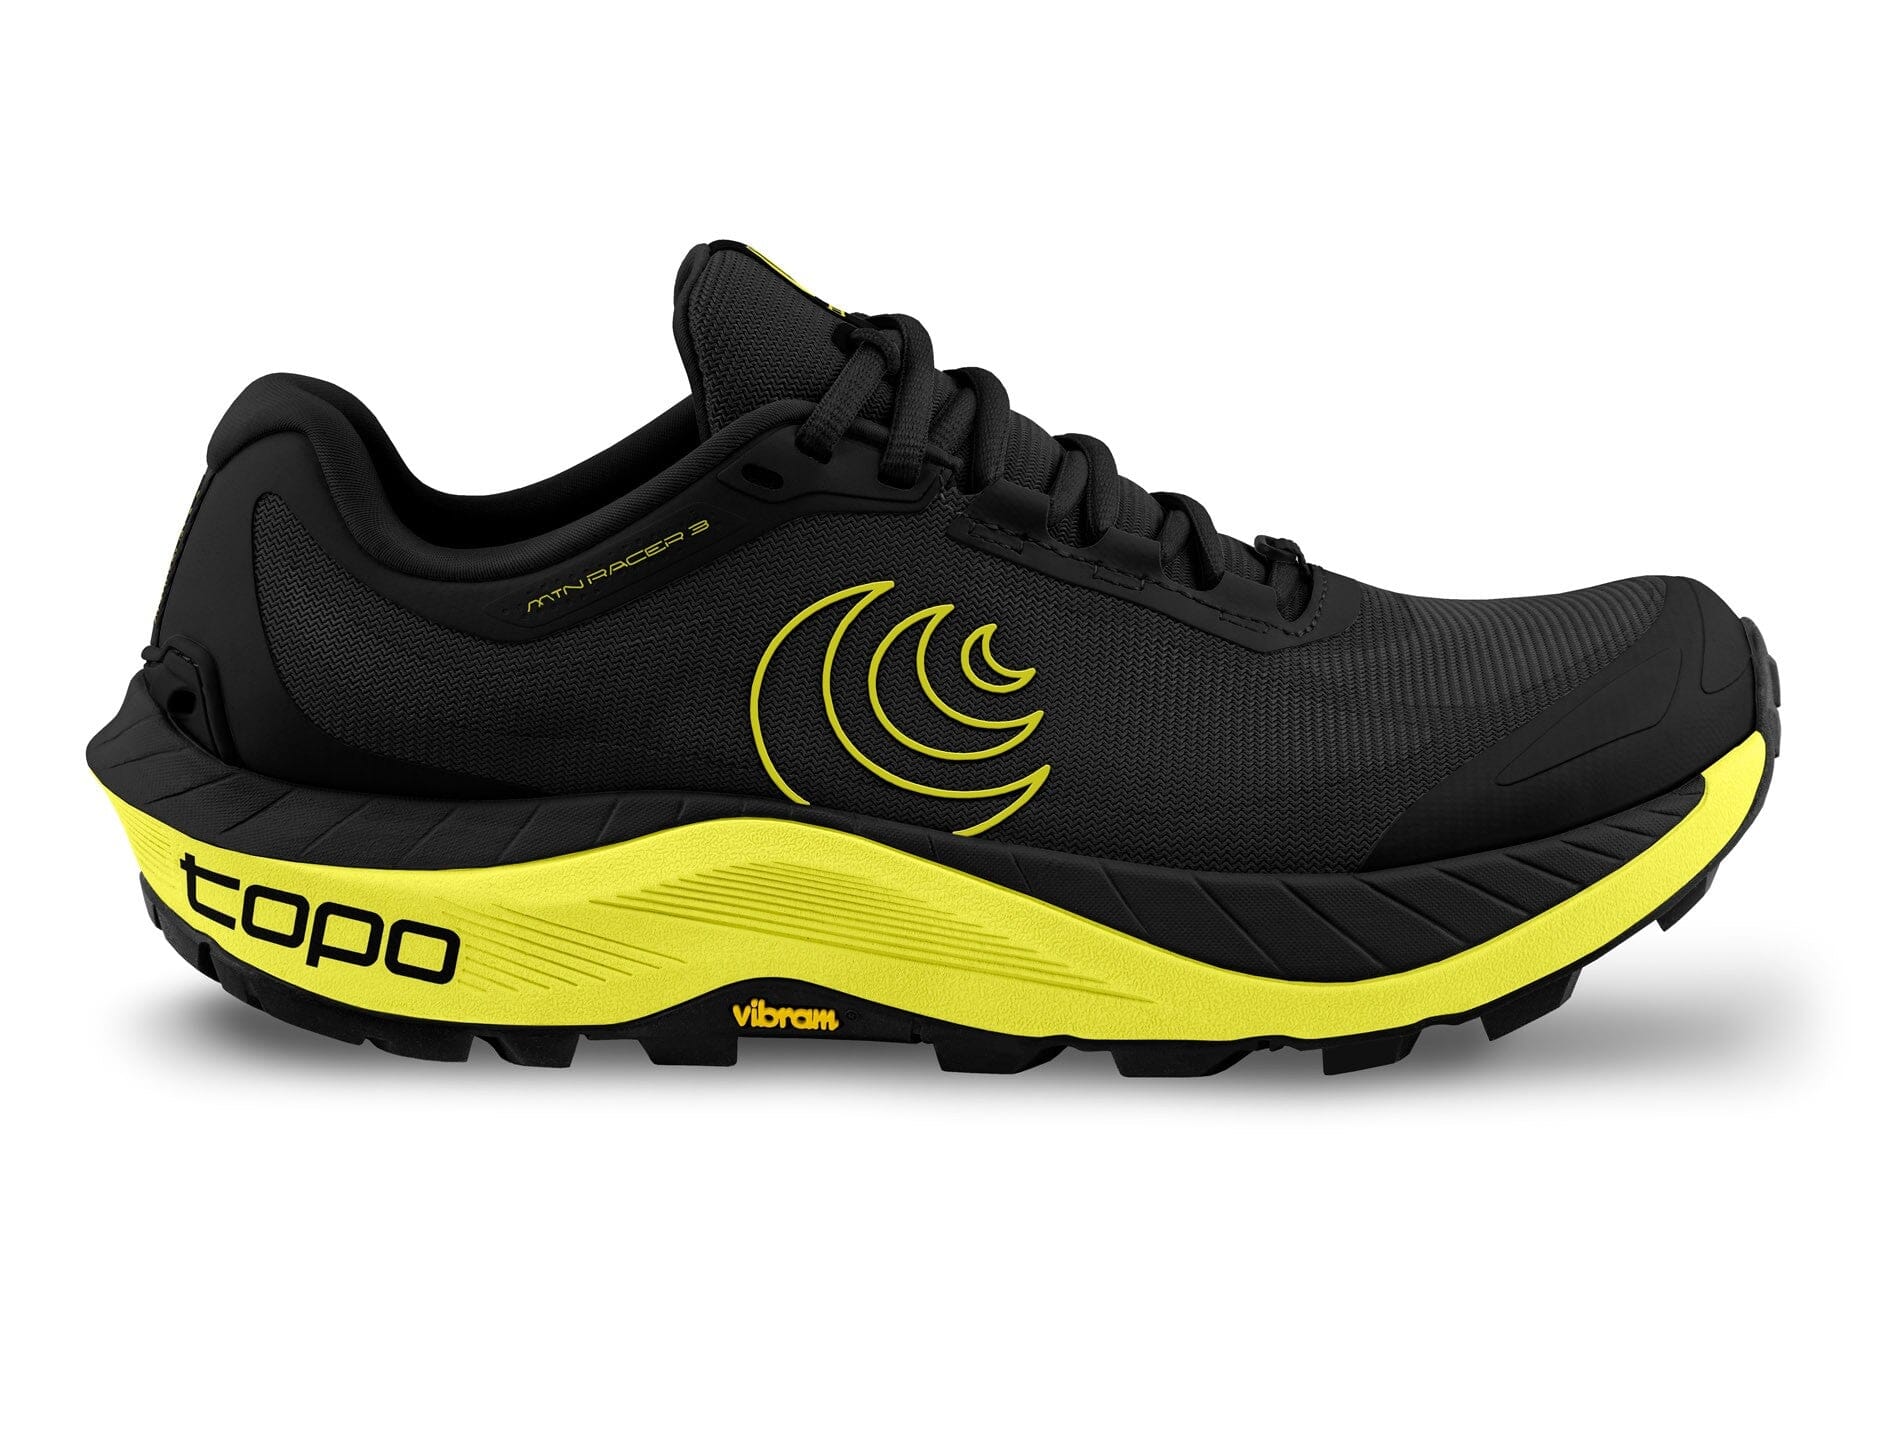 Topo Men's MTN Racer 3 Trail Running Shoes Black/Lime US 9 